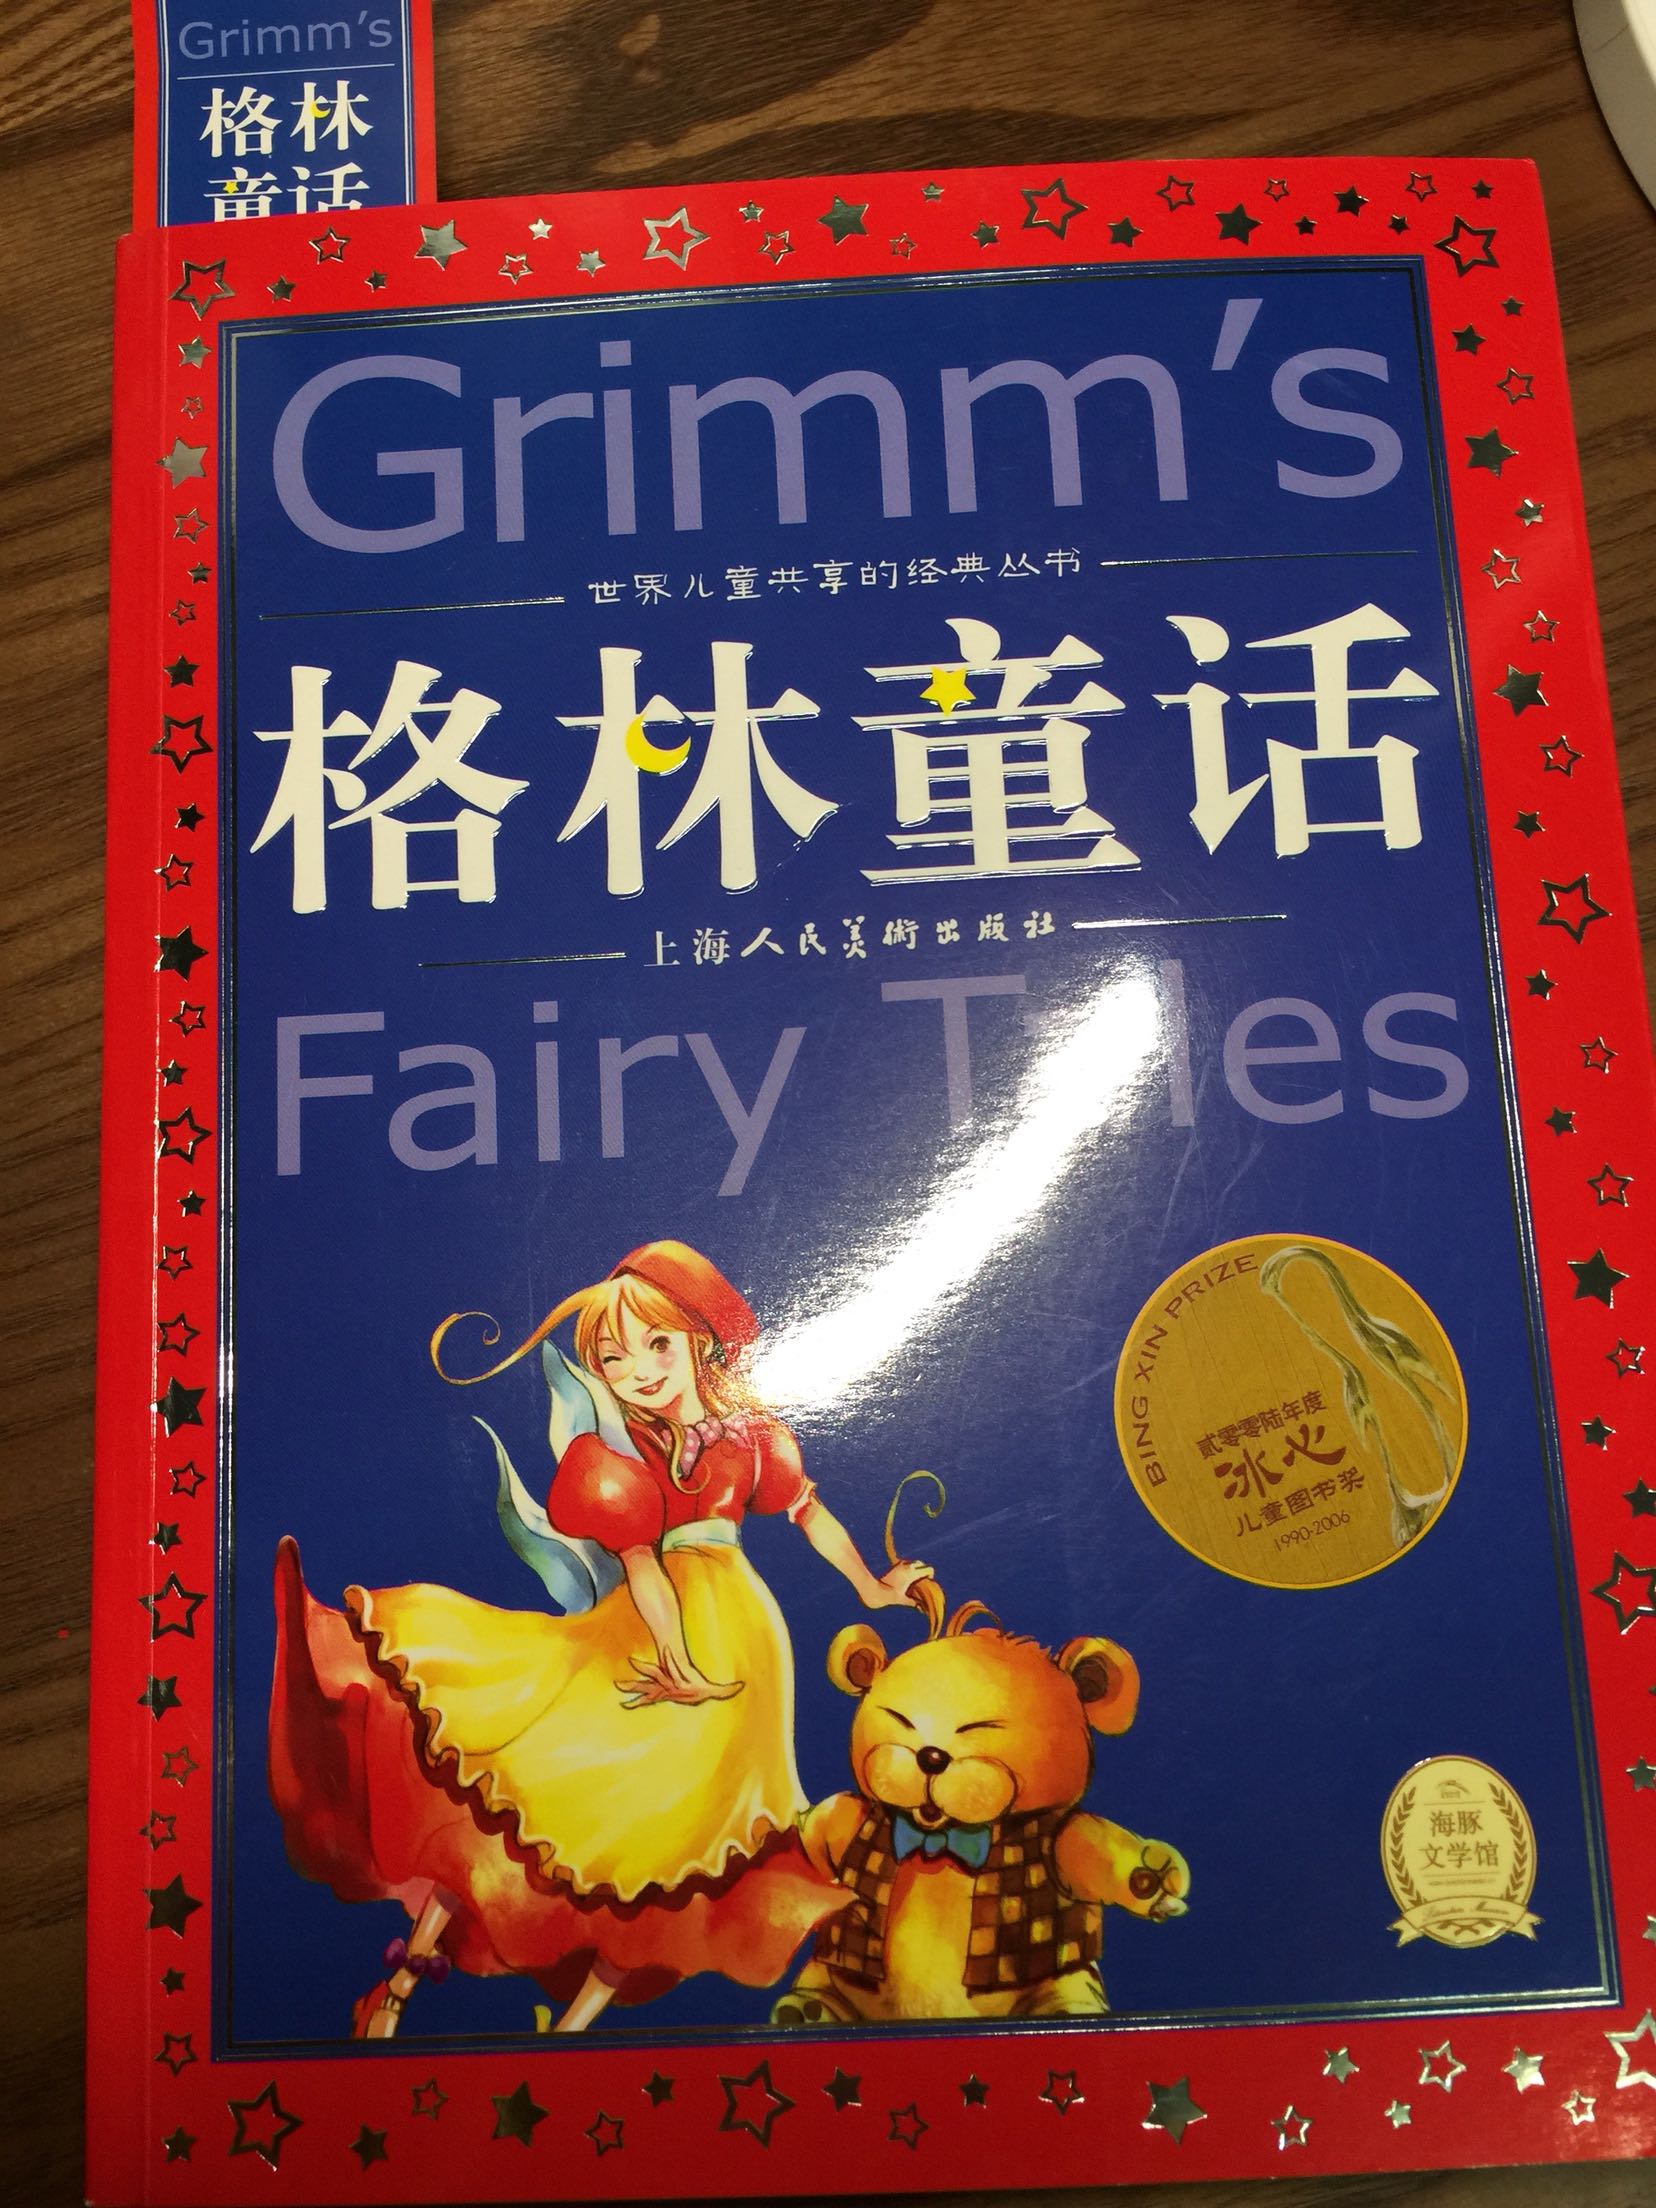 孩子很喜欢这套书